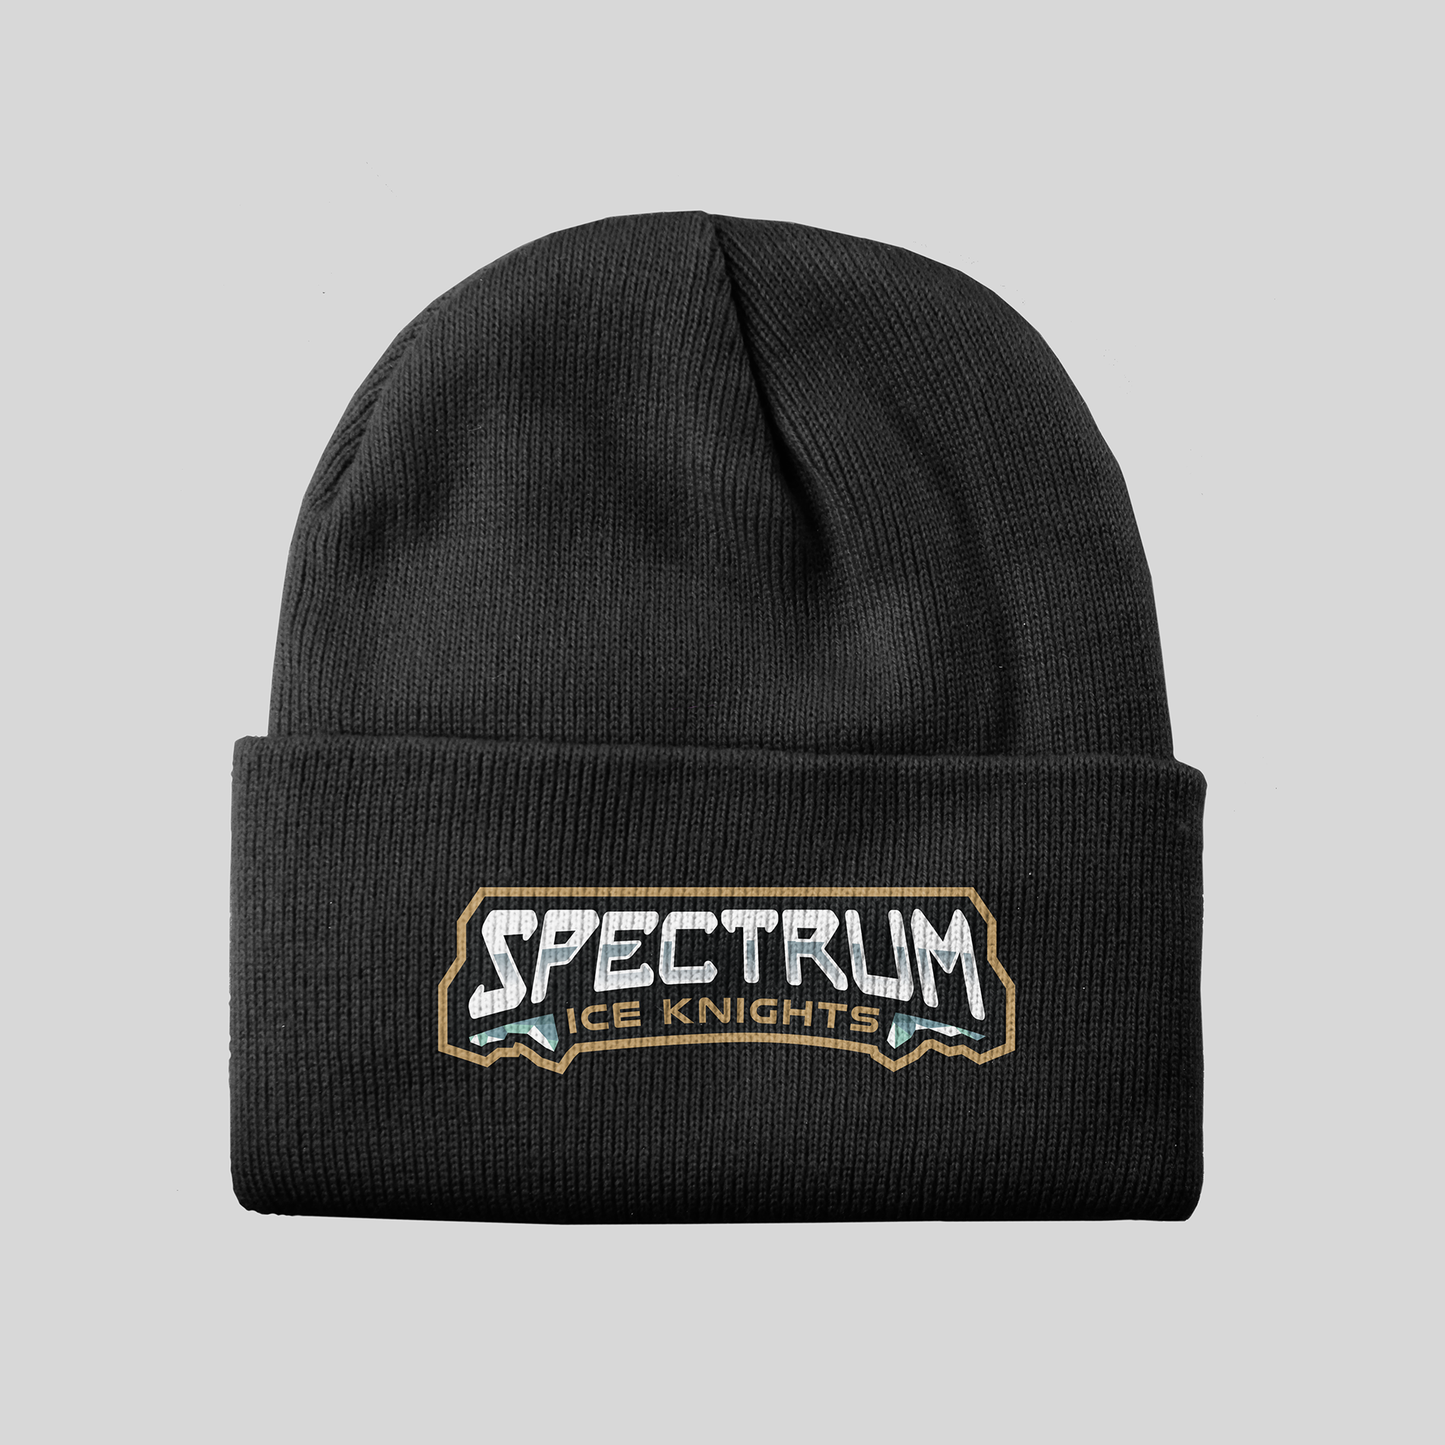 Spectrum Ice Knights Knit Hat - Redwolf Jersey Works